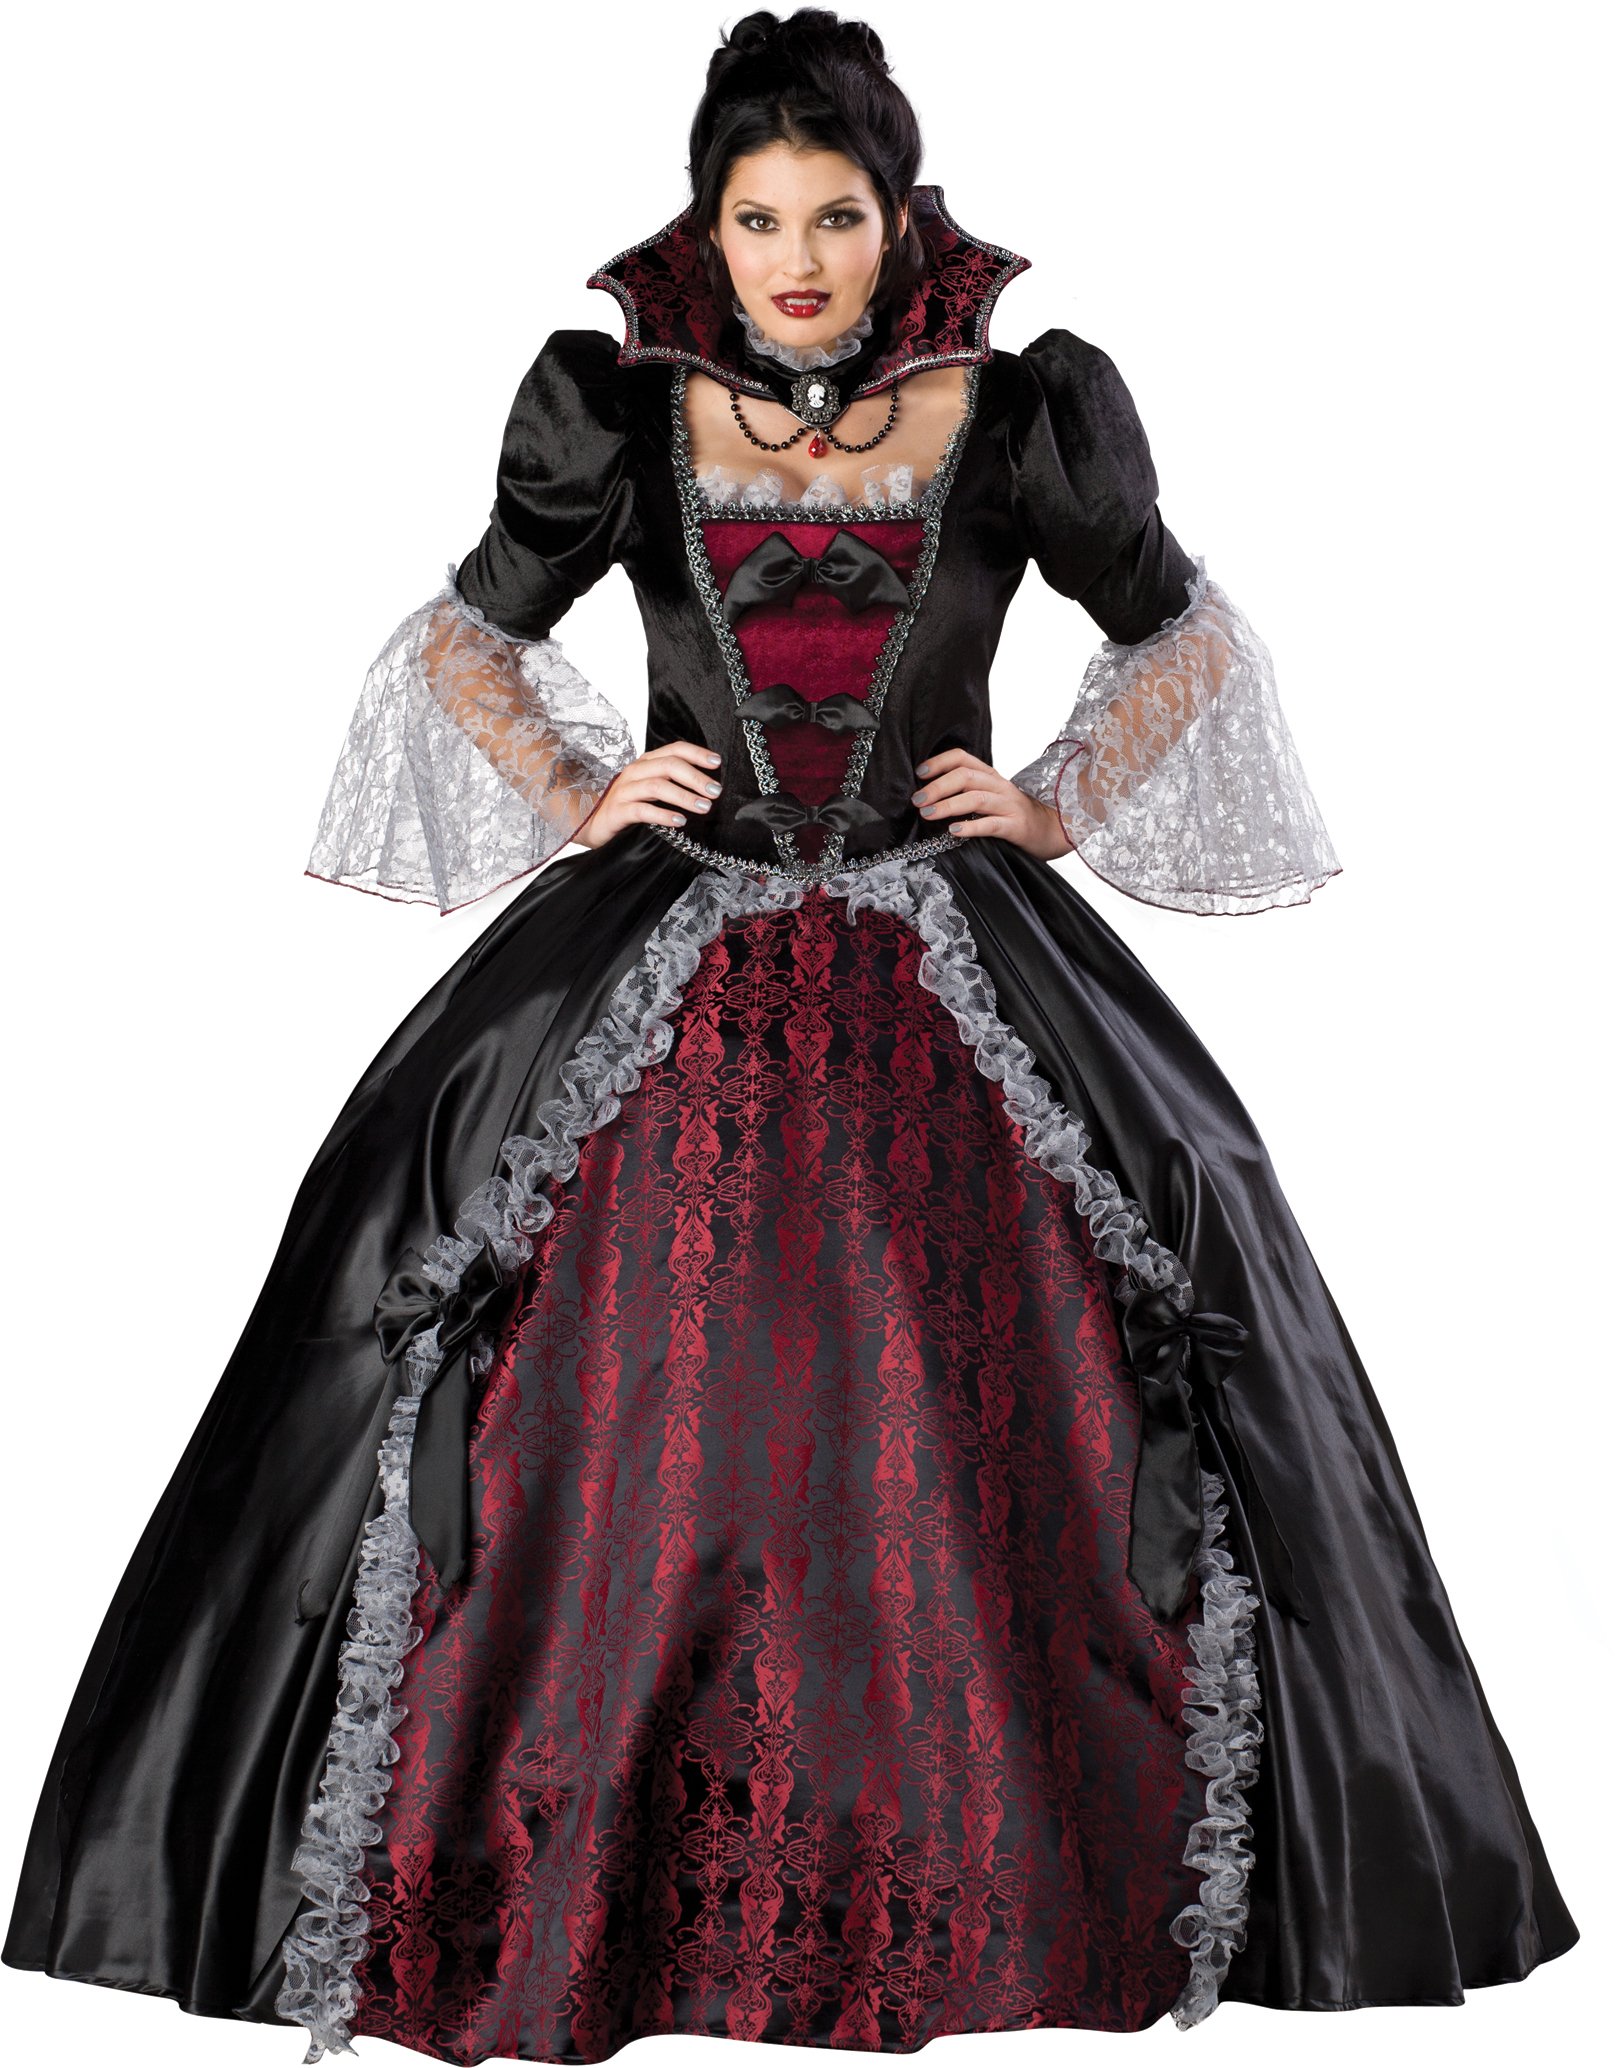 Vampiress Of Versailles Adult Plus Costume